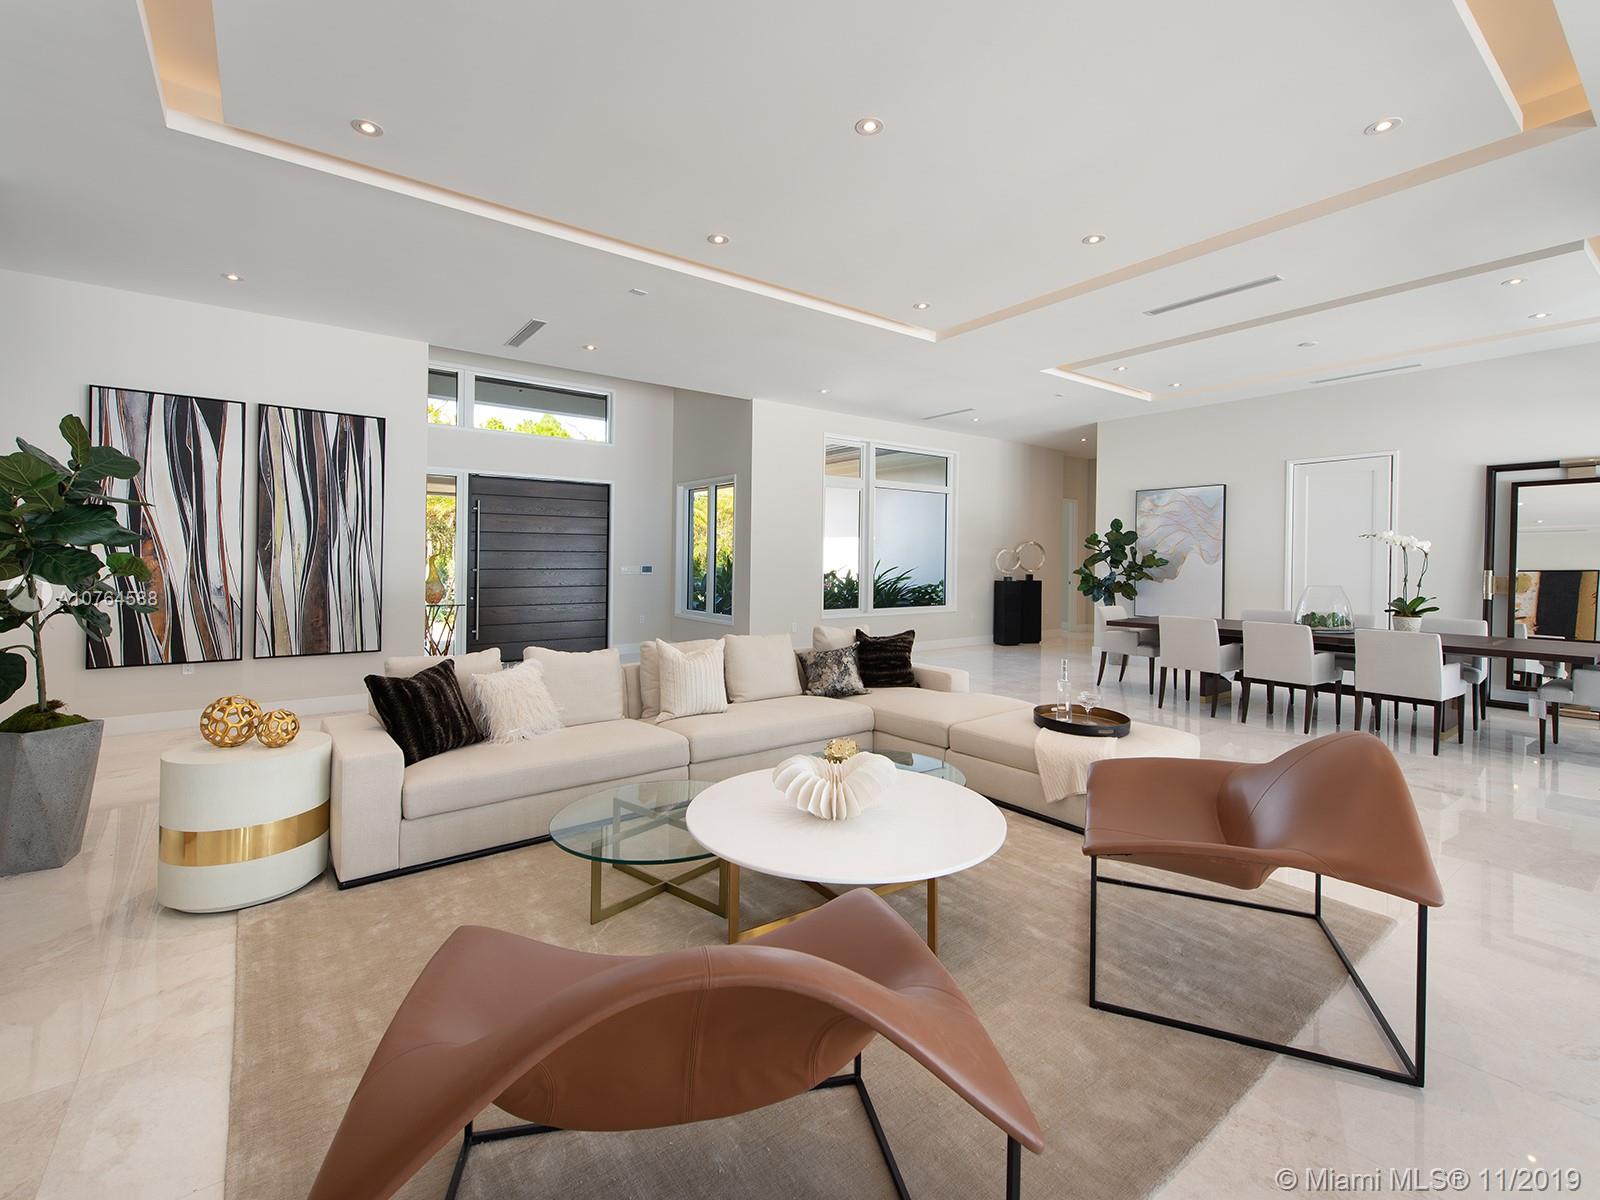 Miami Interior Design Style Guide | Decor House Furniture